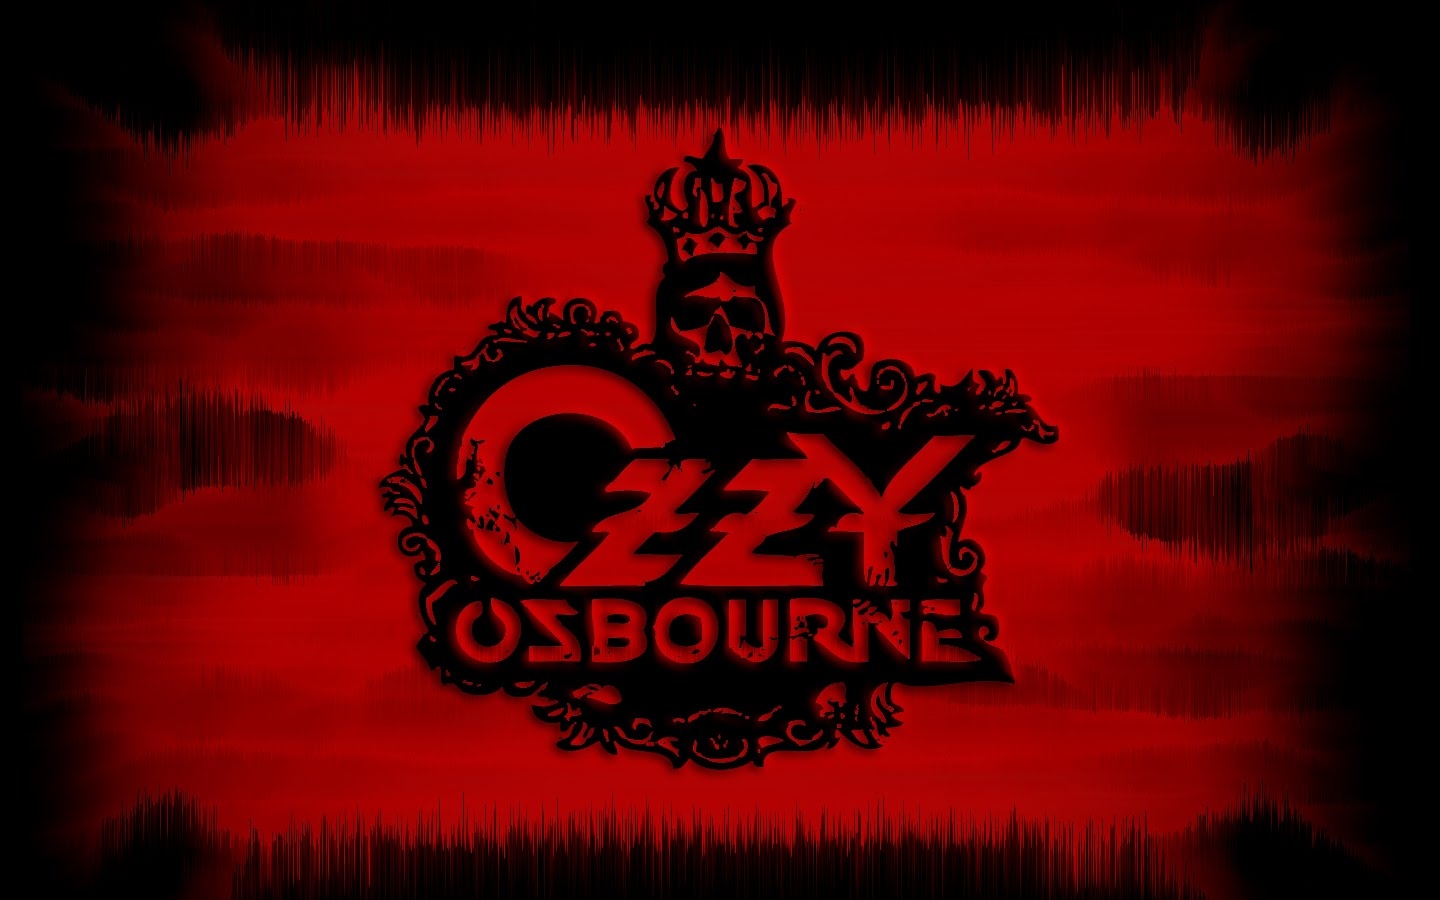 Ozzy Osbourne Wallpaper by rabidmedia on DeviantArt